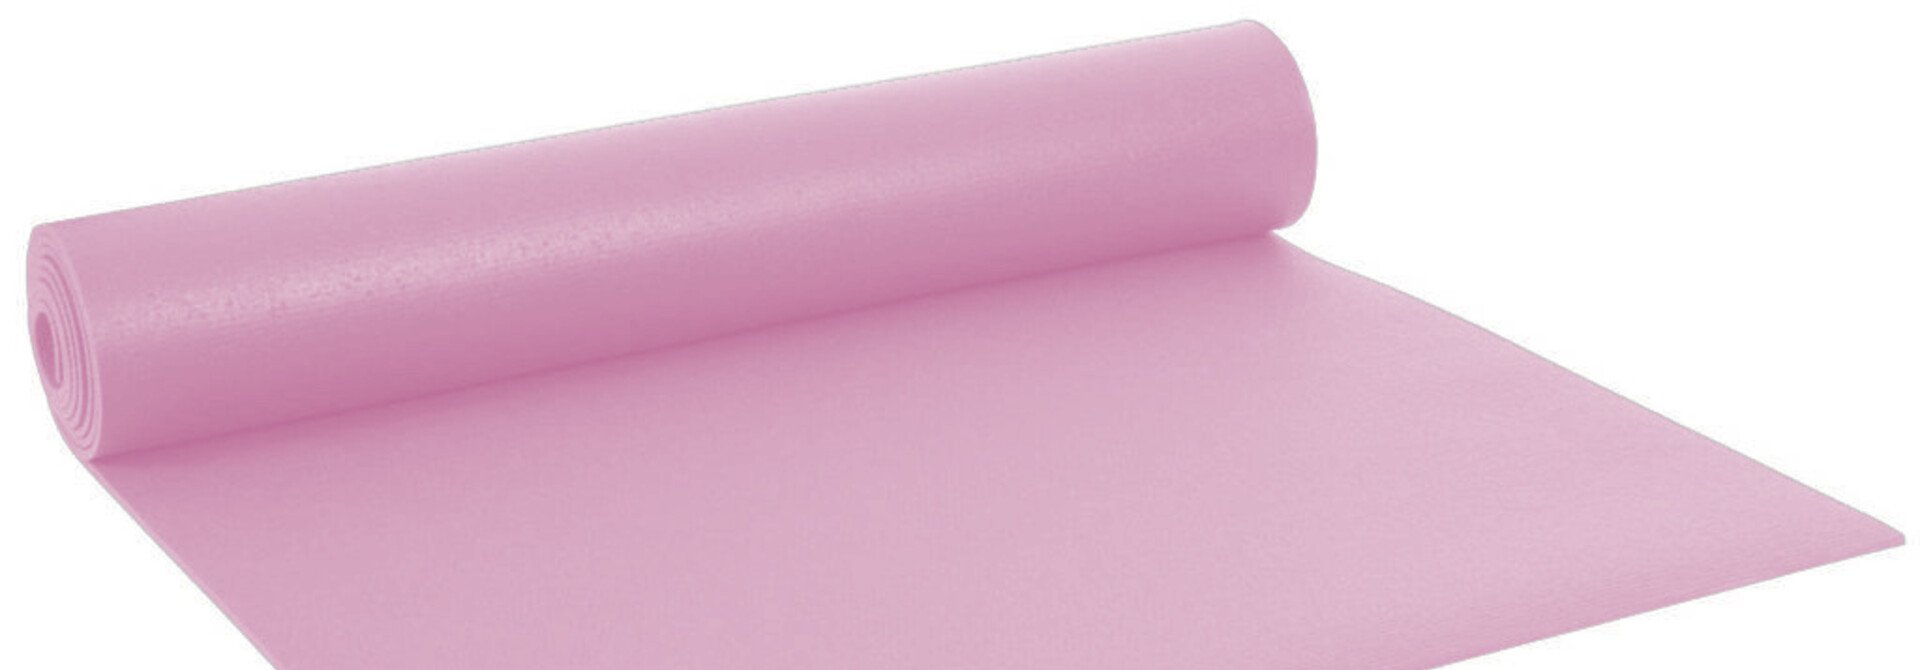 Yogisha Studio Yoga Mat XL - Light Pink